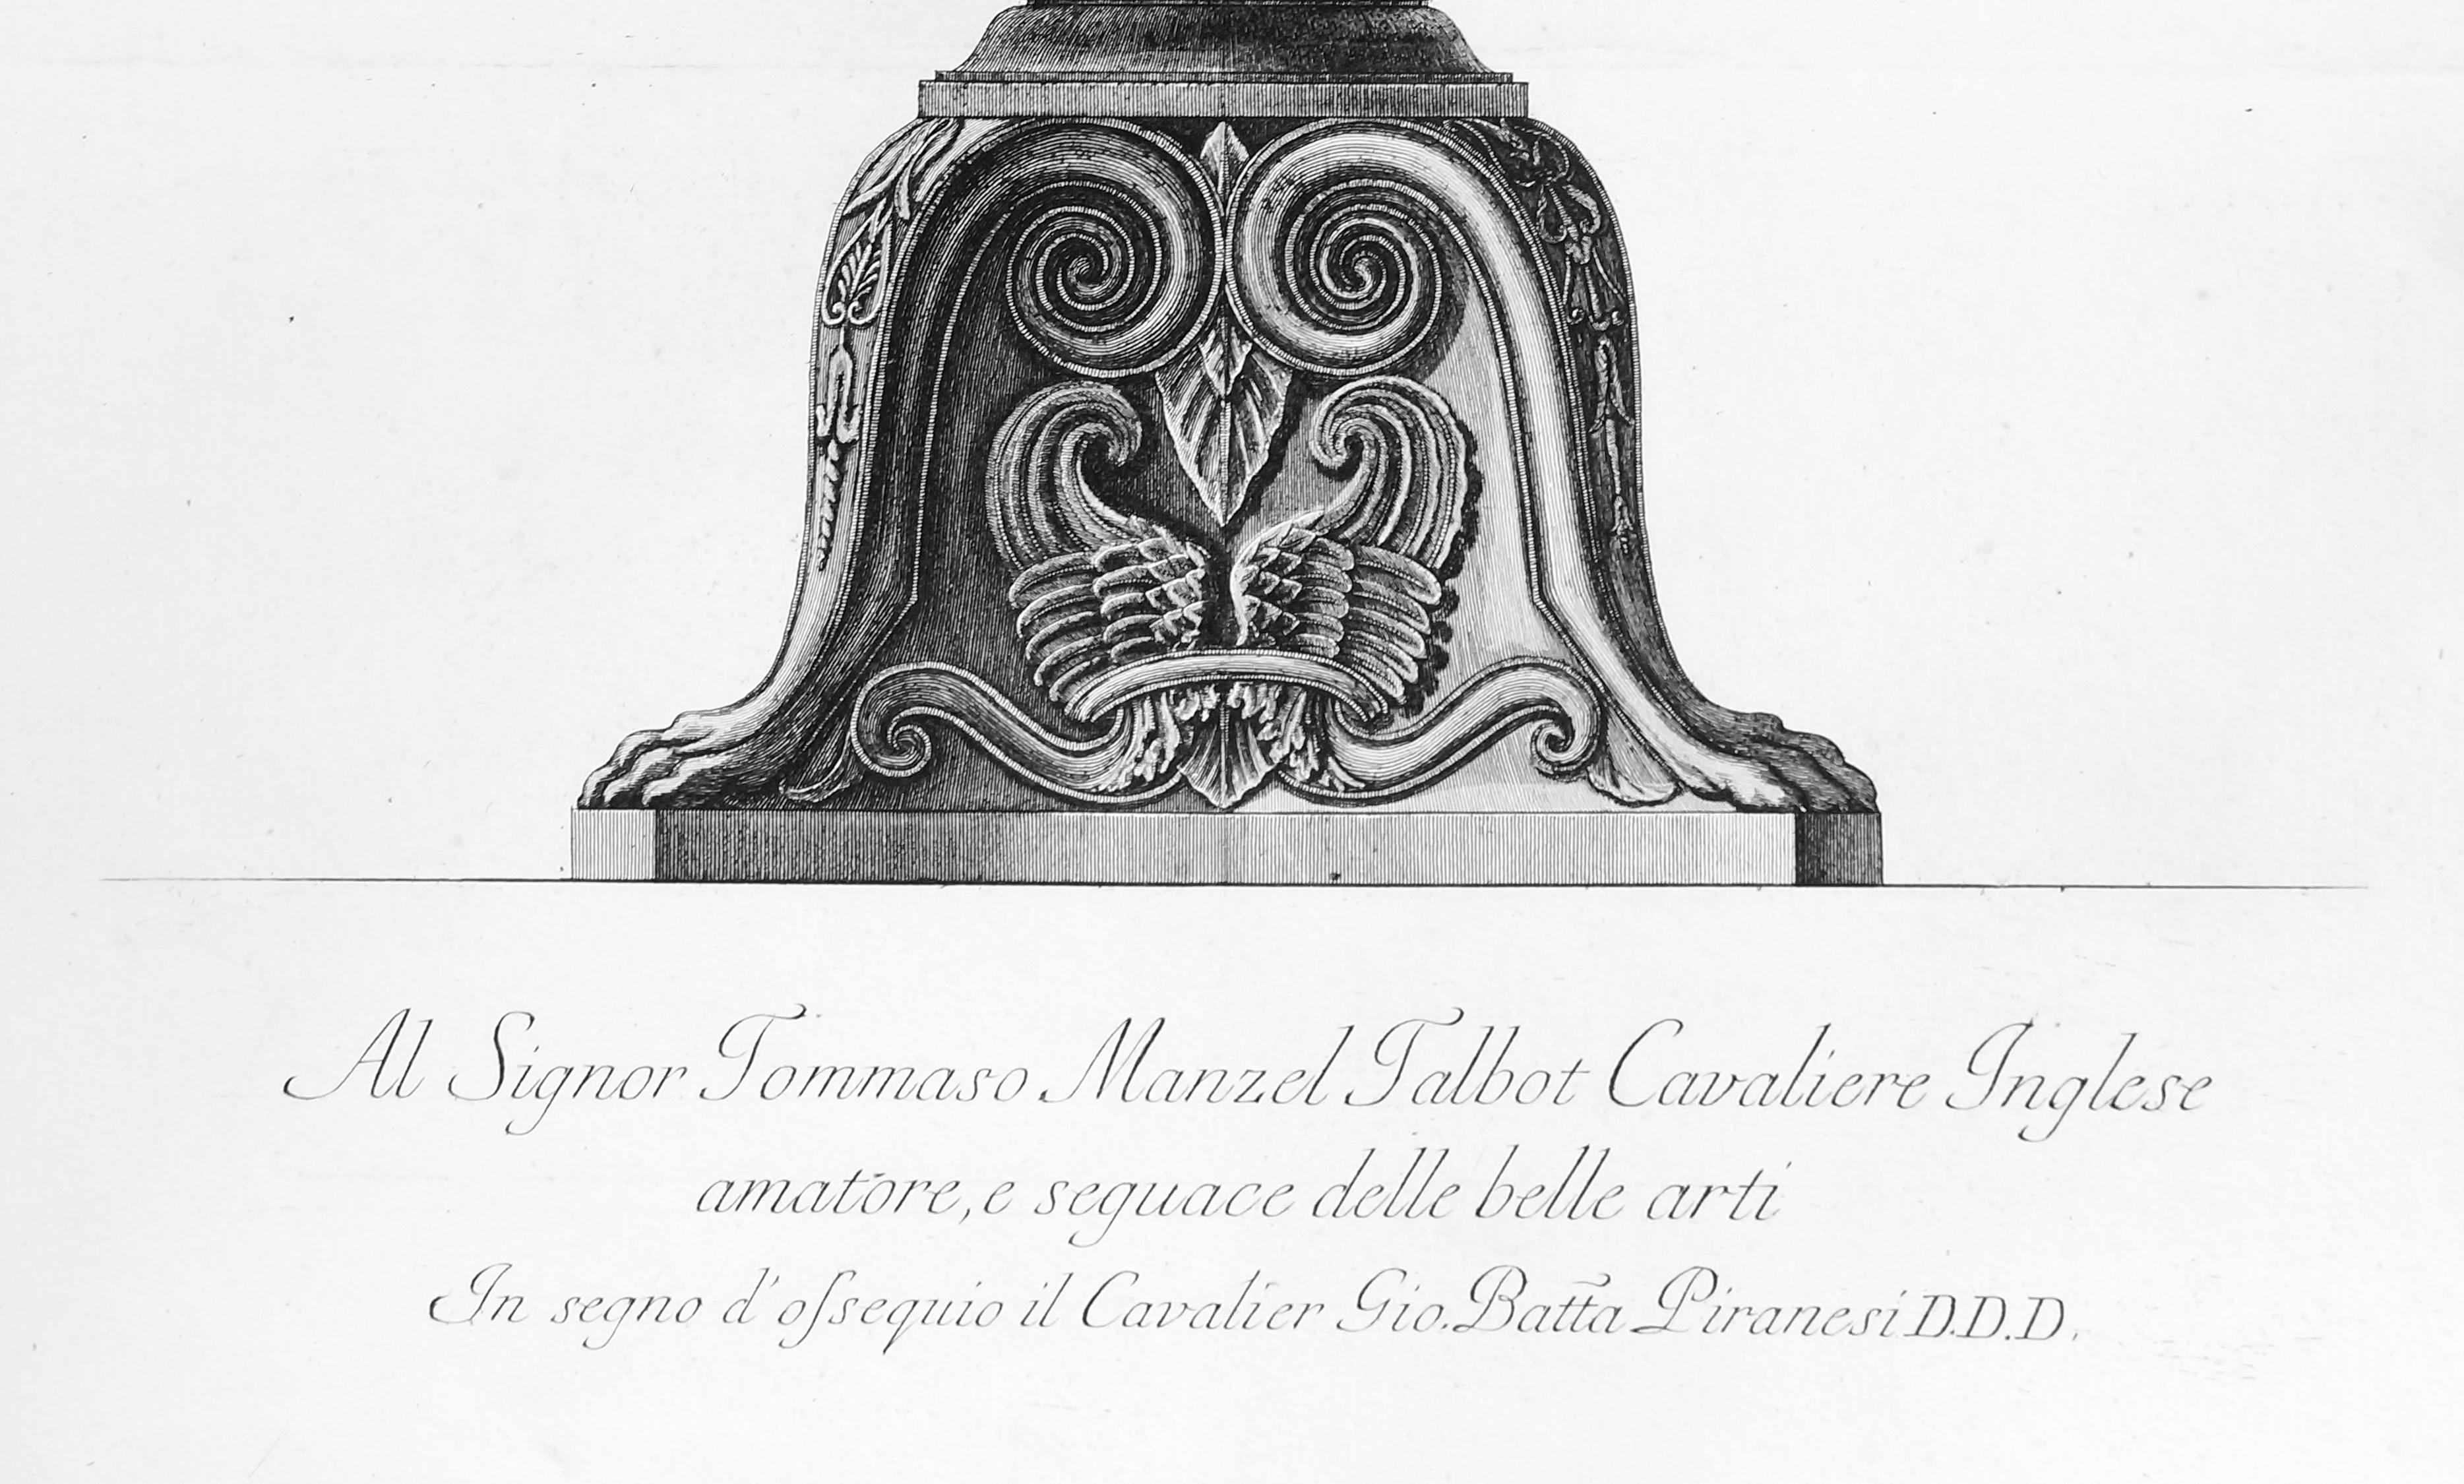 Vaso antico di marmo, che si conosceva nella Galleria... - Etching 1778 - Print by Giovanni Battista Piranesi